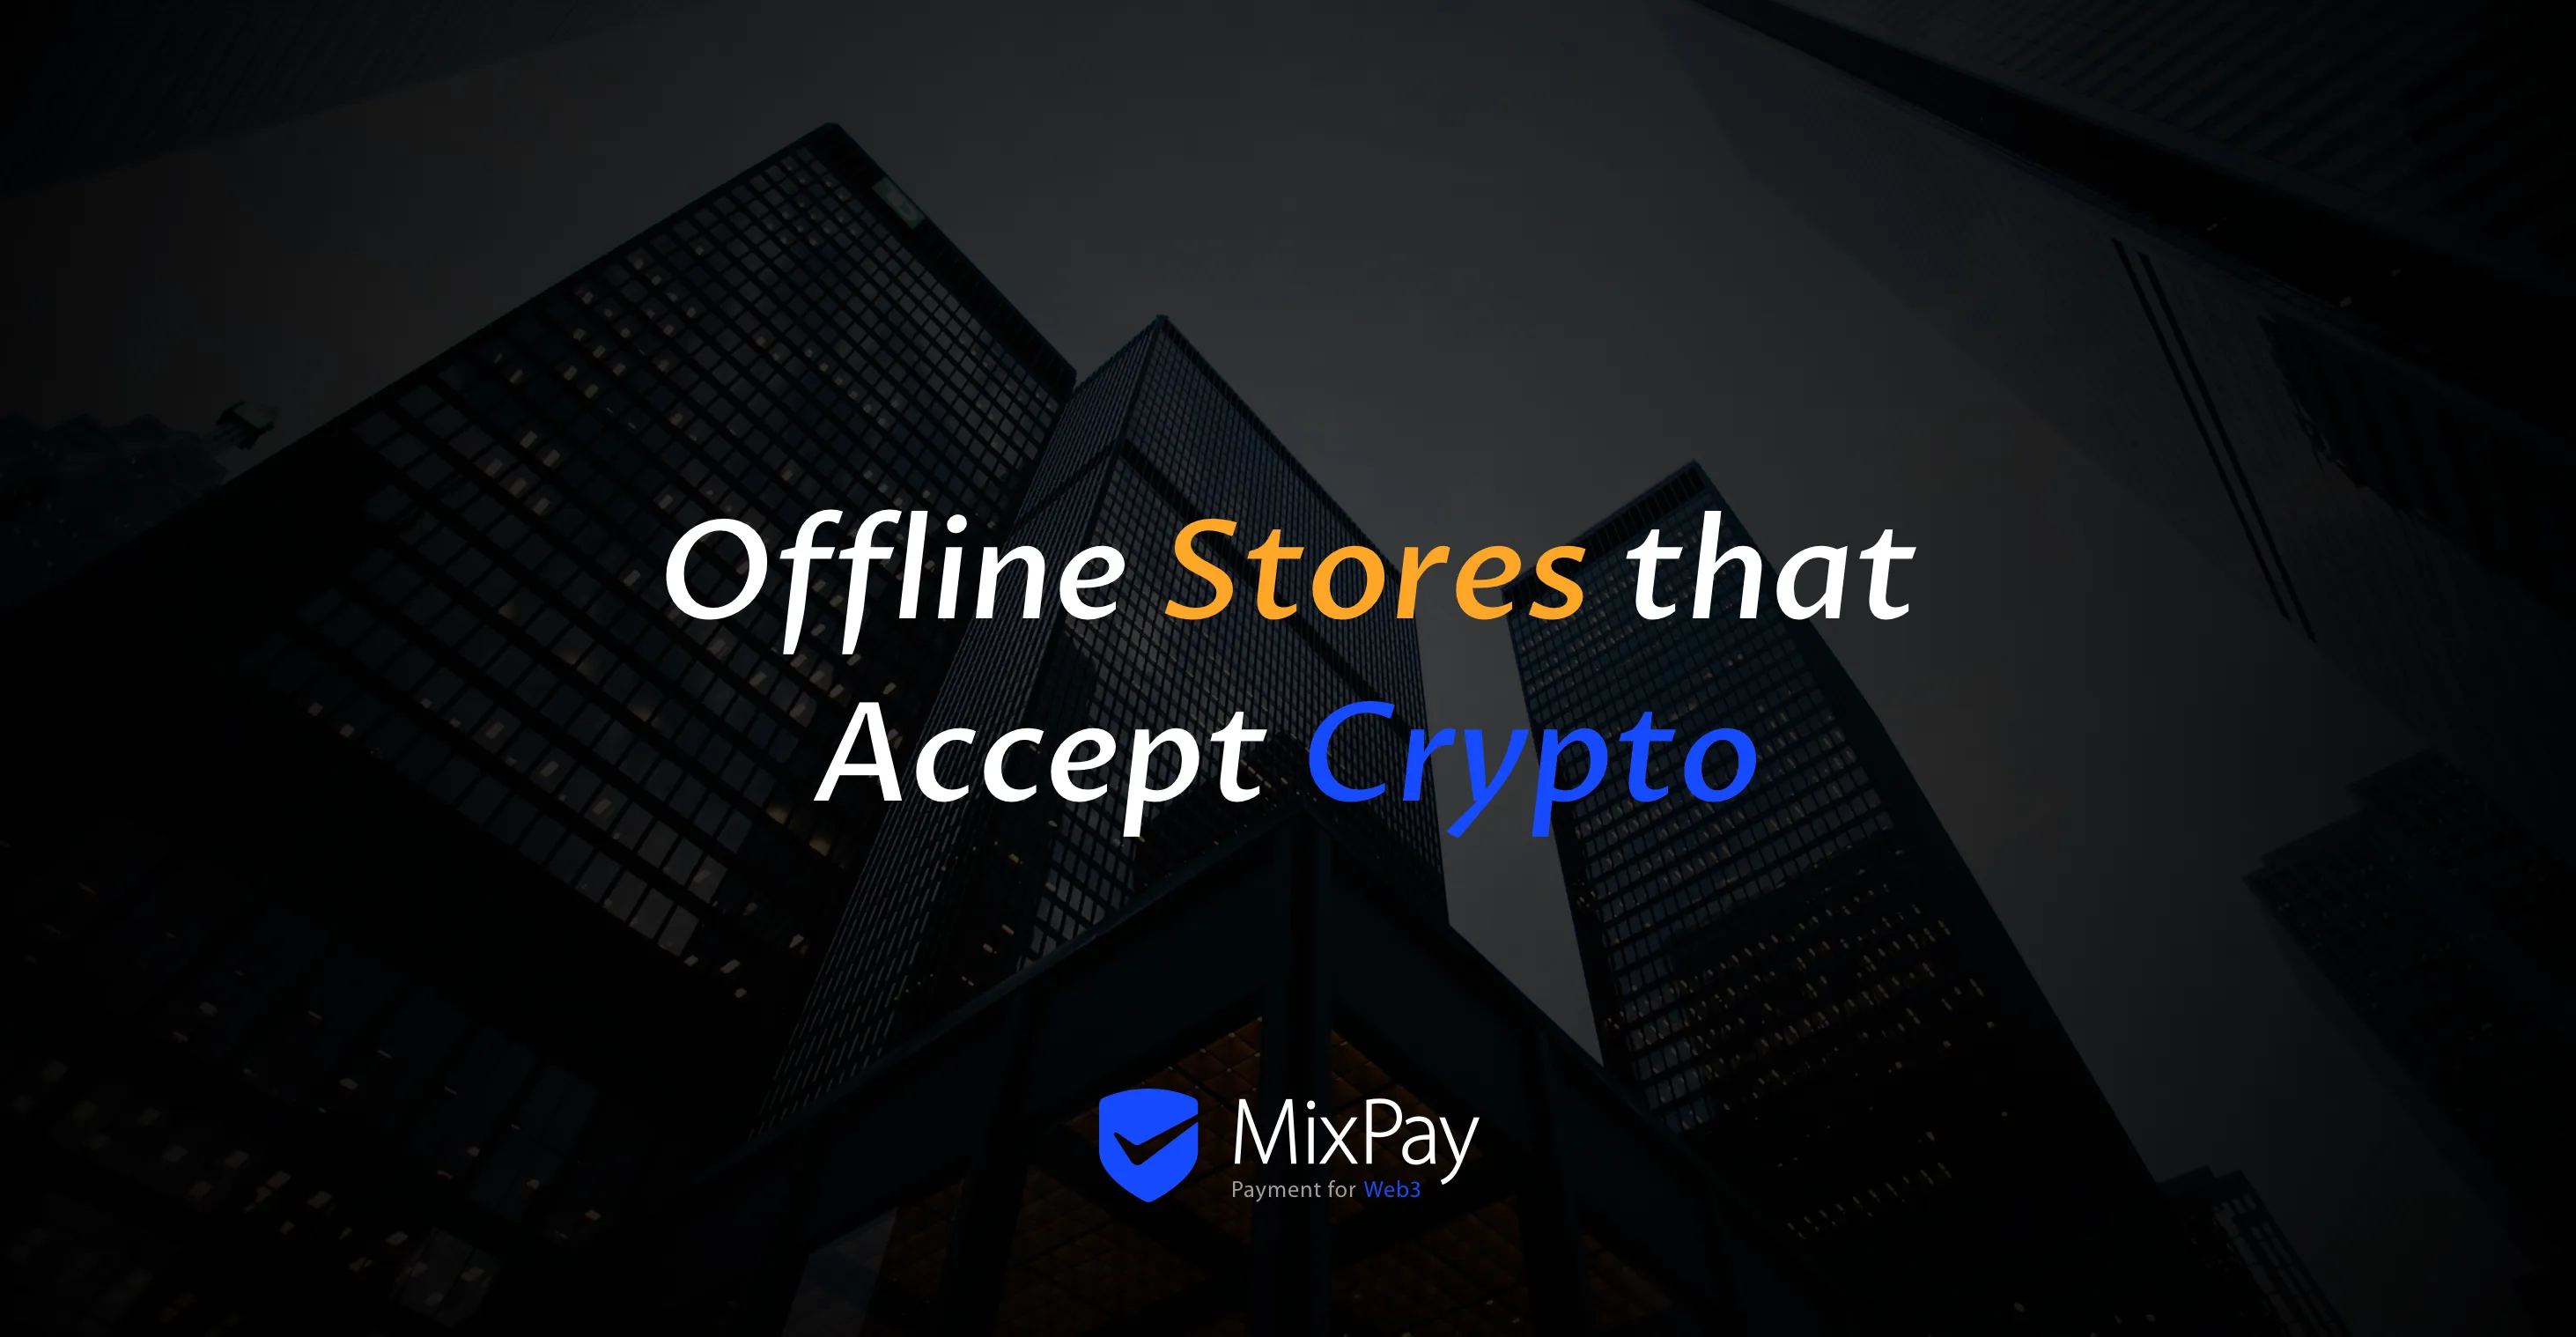 Offline obchody, které přijímají kryptoměny s MixPay